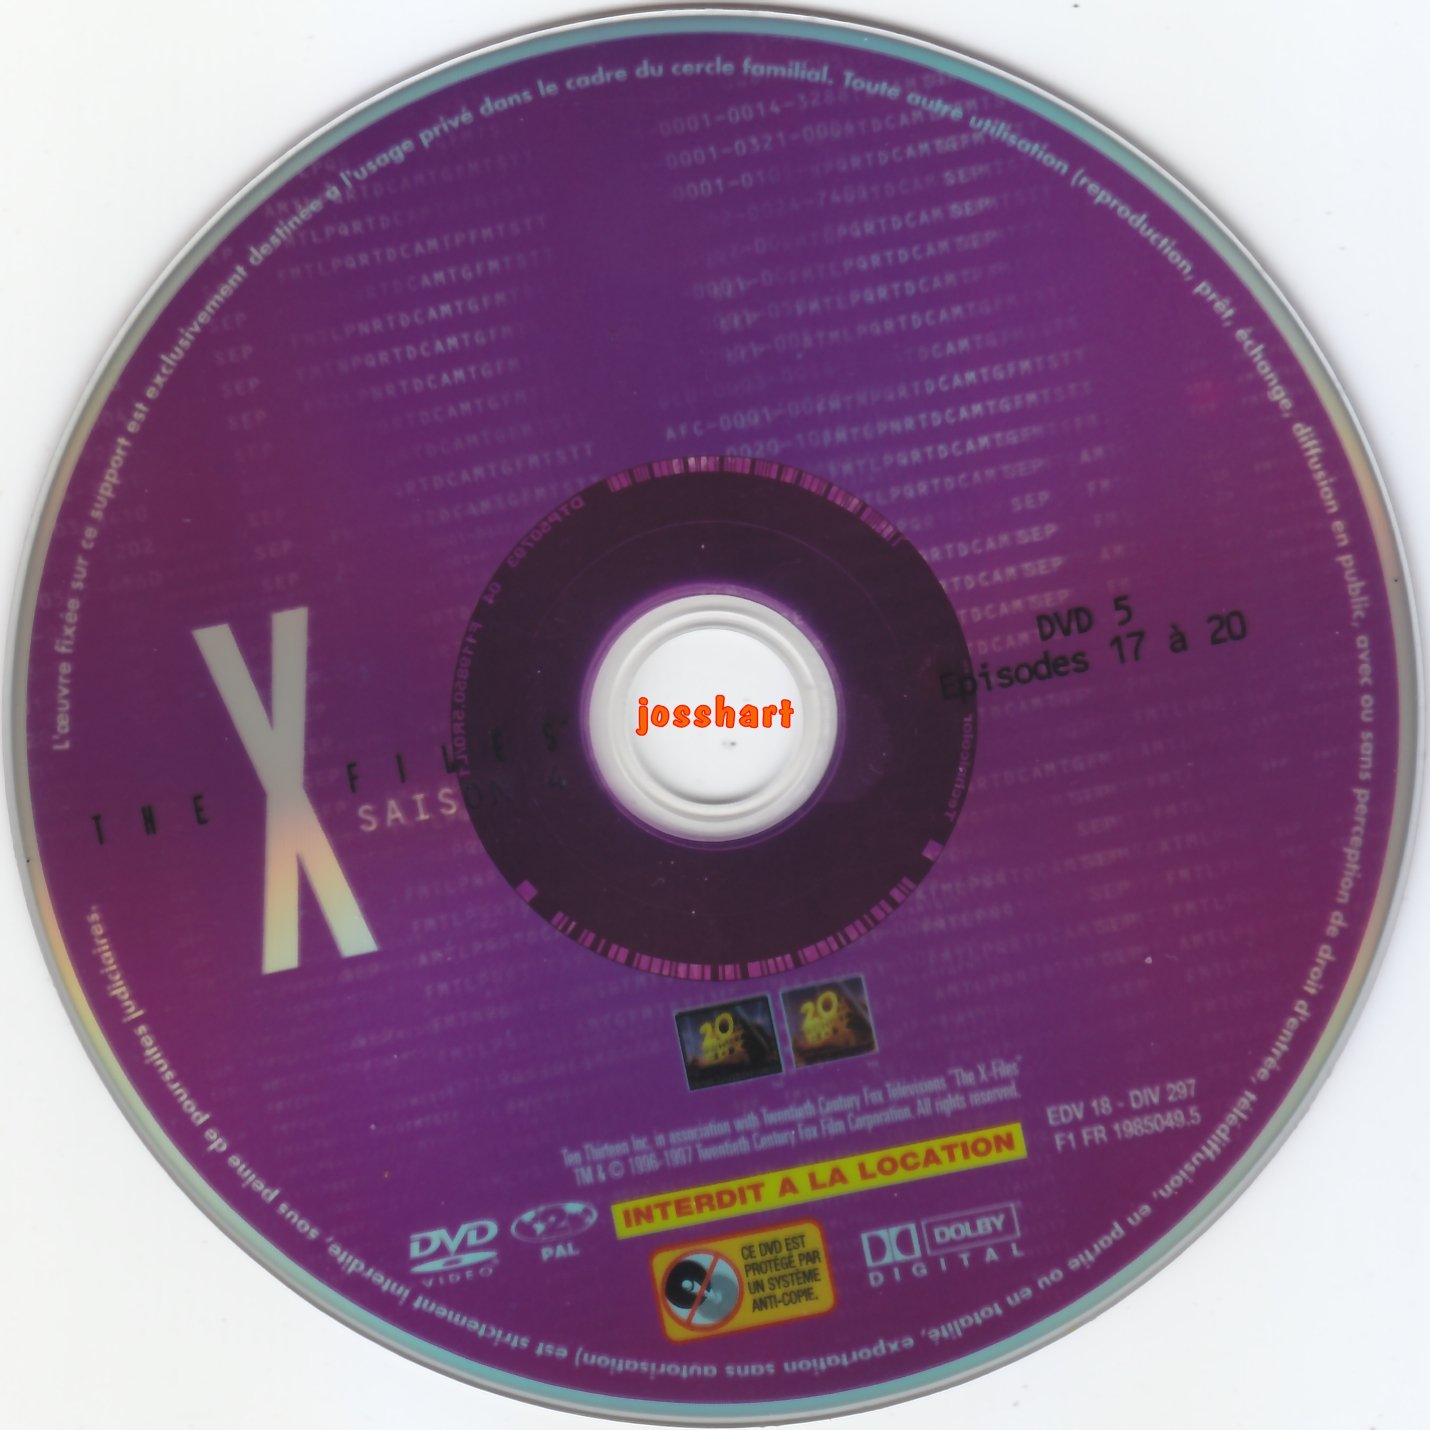 The X Files Saison 4 DVD 5 v2